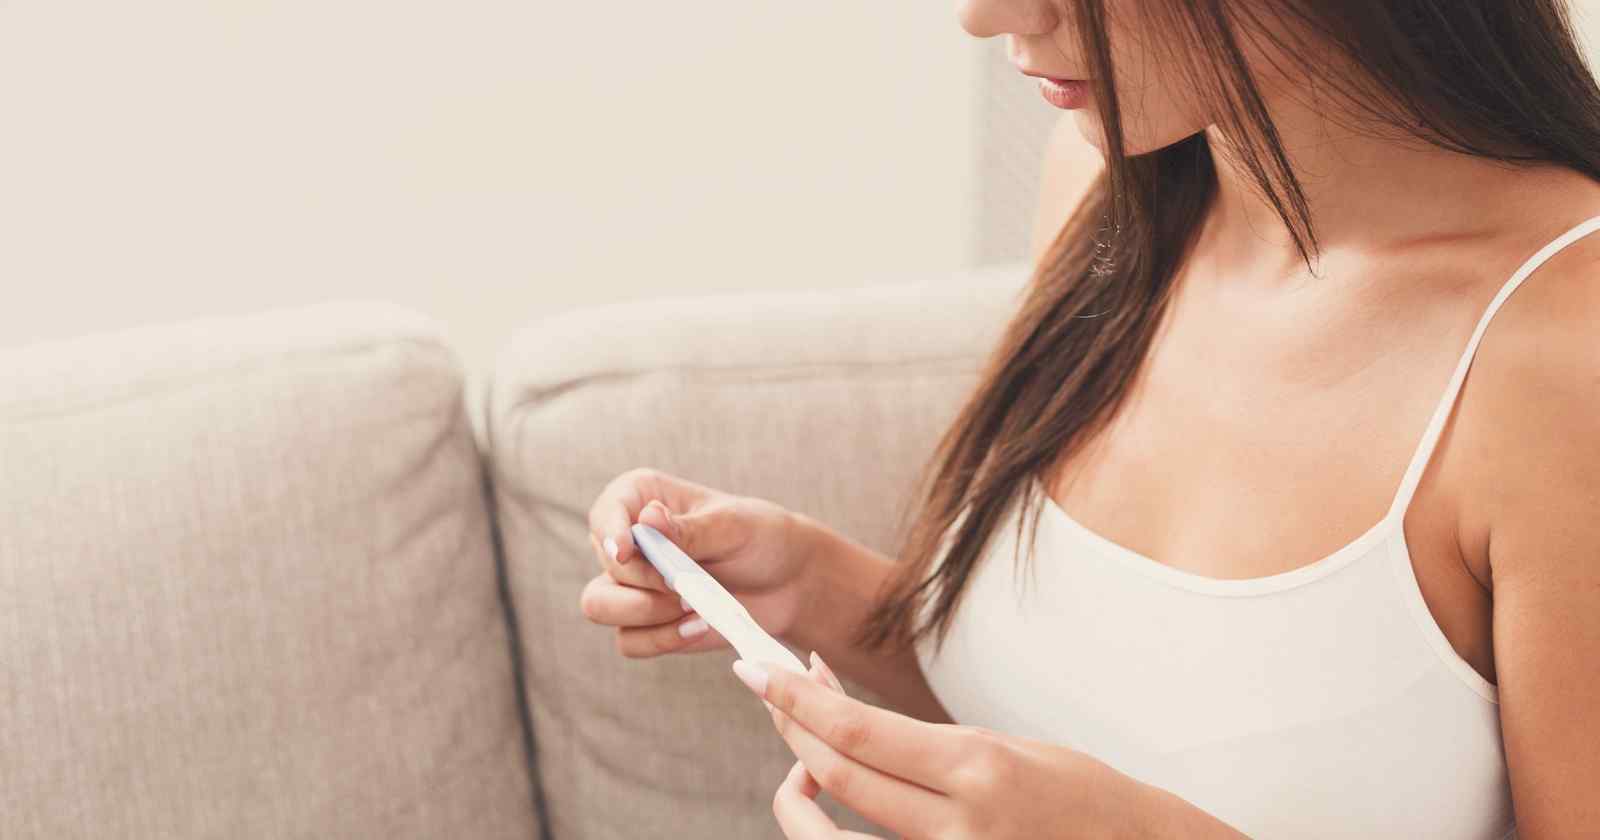 Svagt streck på graviditetstest – är jag gravid?